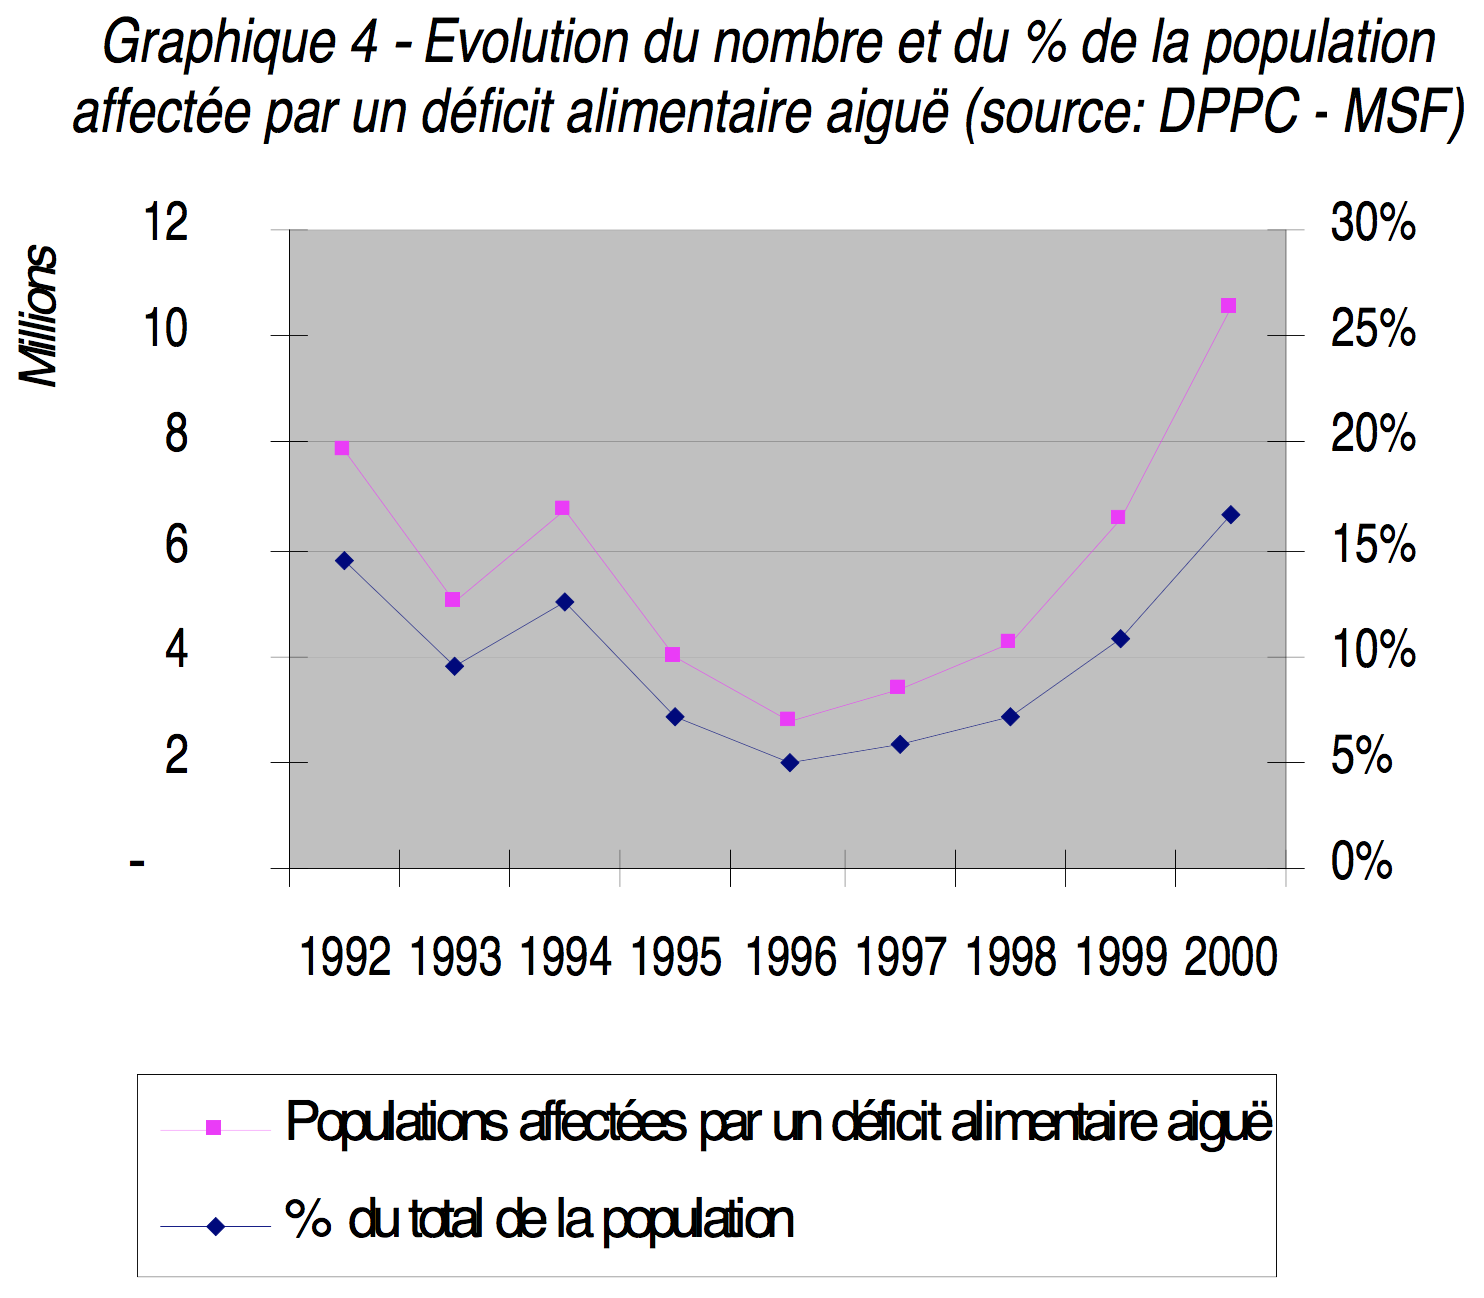 Graphique 4: Evolution du nombre et du pourcentage de la population affectée